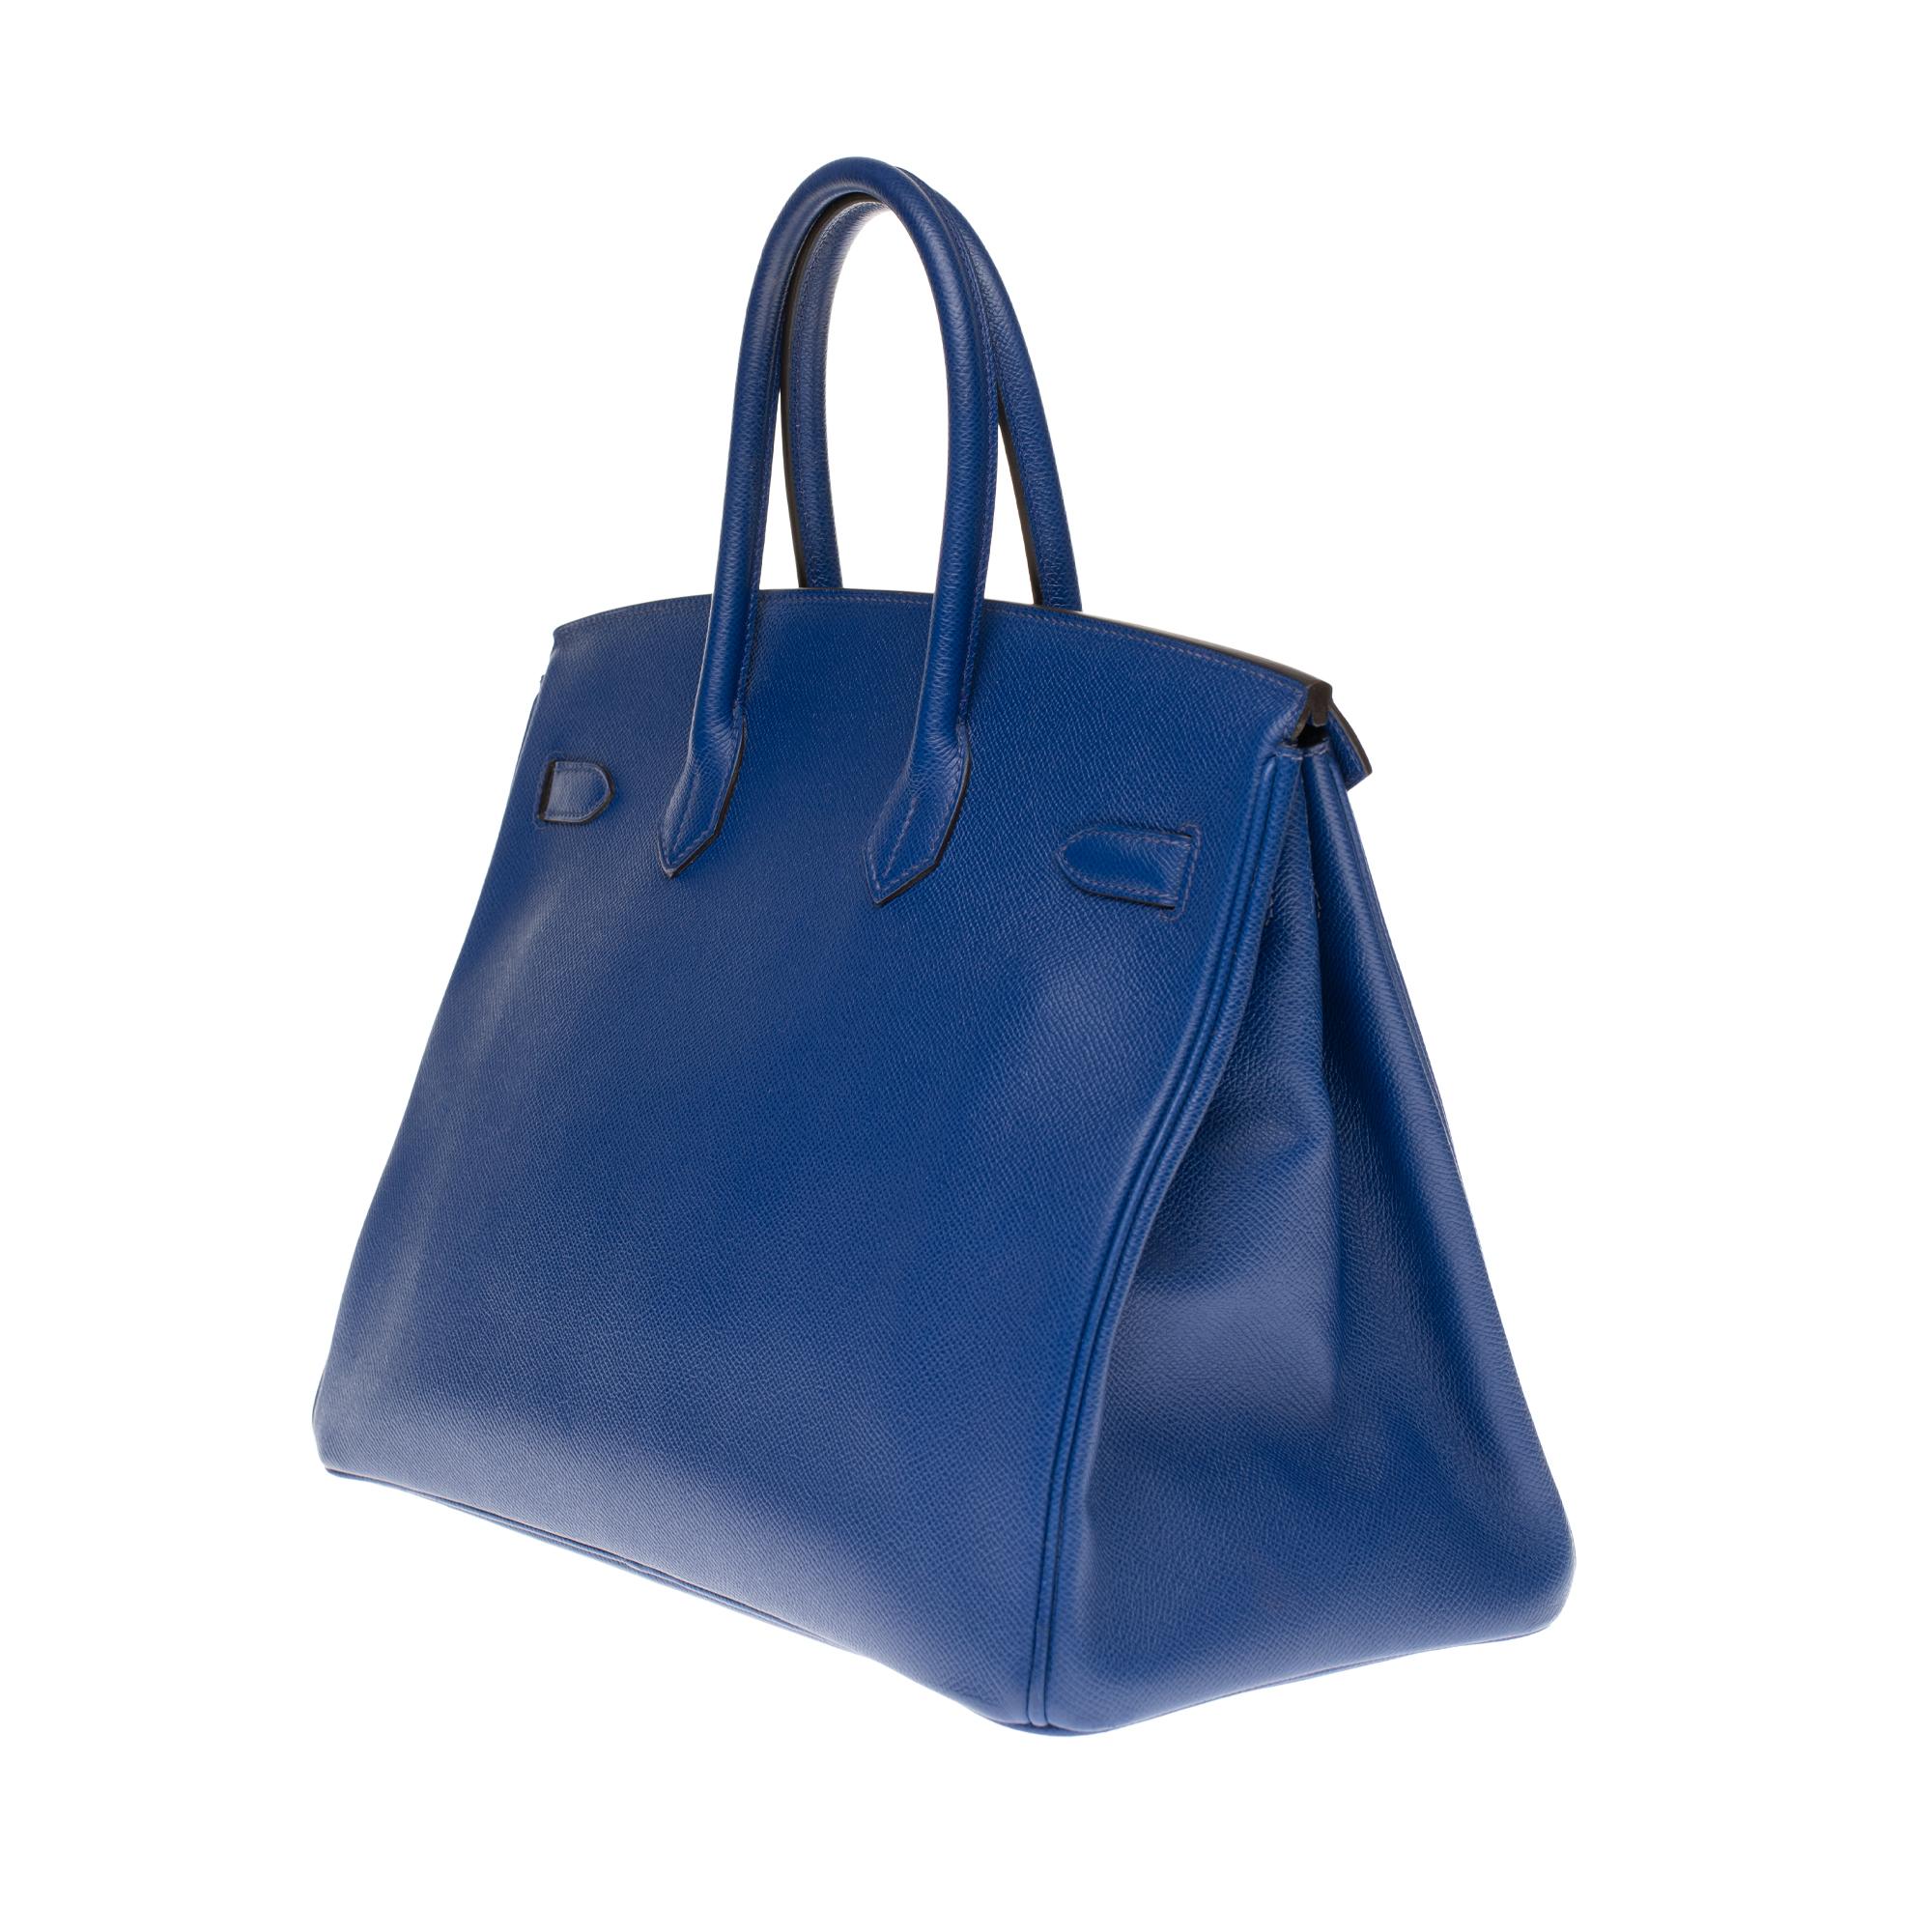 Blue Hermès Birkin 35 handbag in bleu électrique epsom leather, GHW